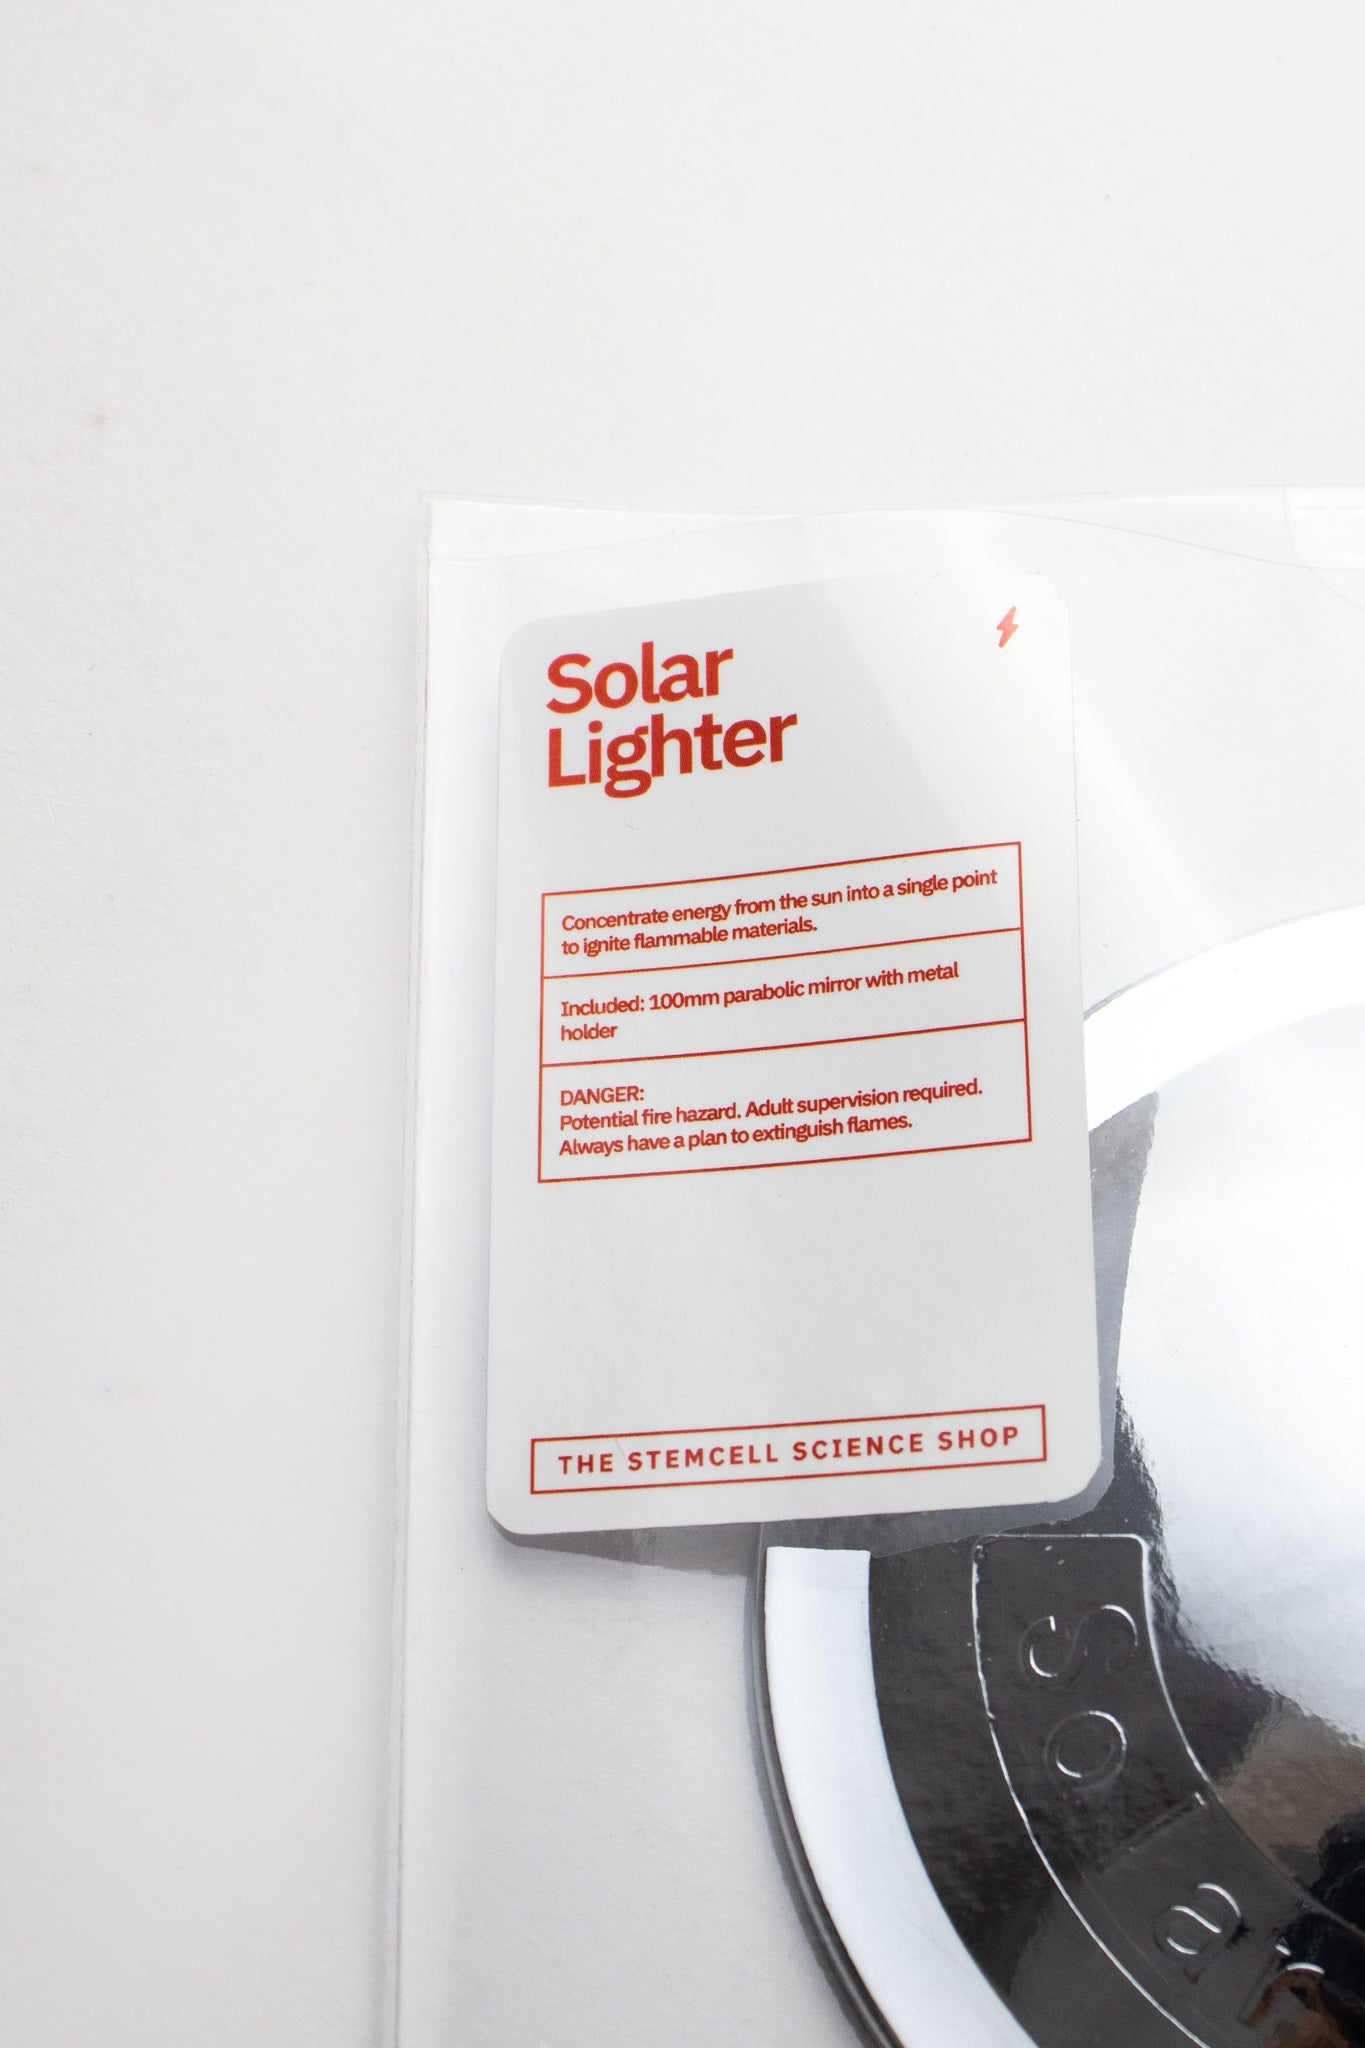 Solar Lighter - Stemcell Science Shop